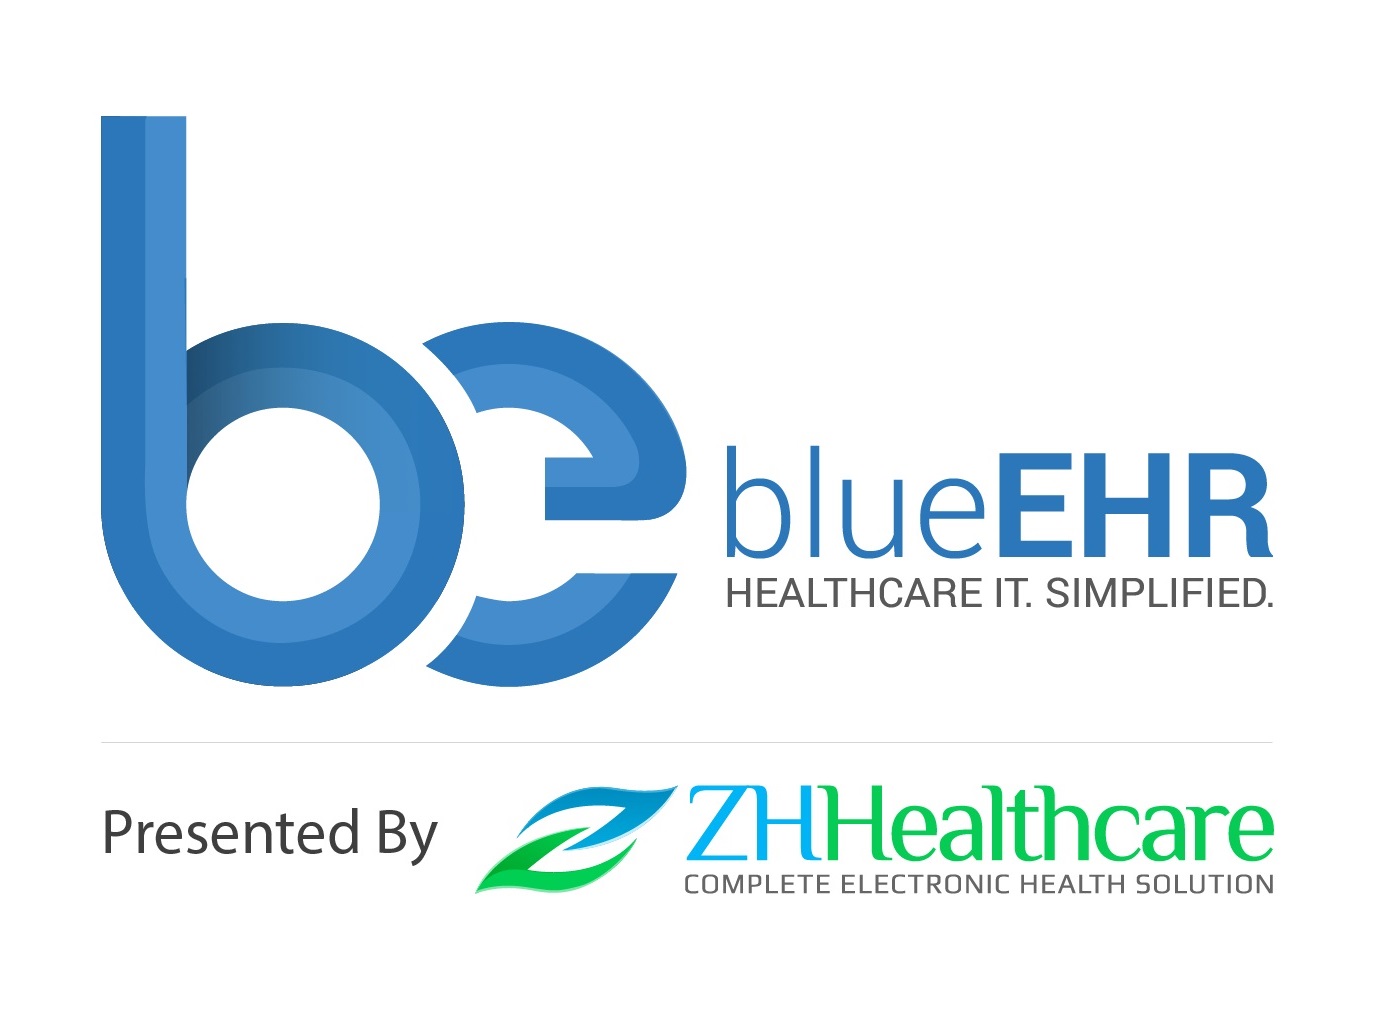 ZH Healthcare's blue